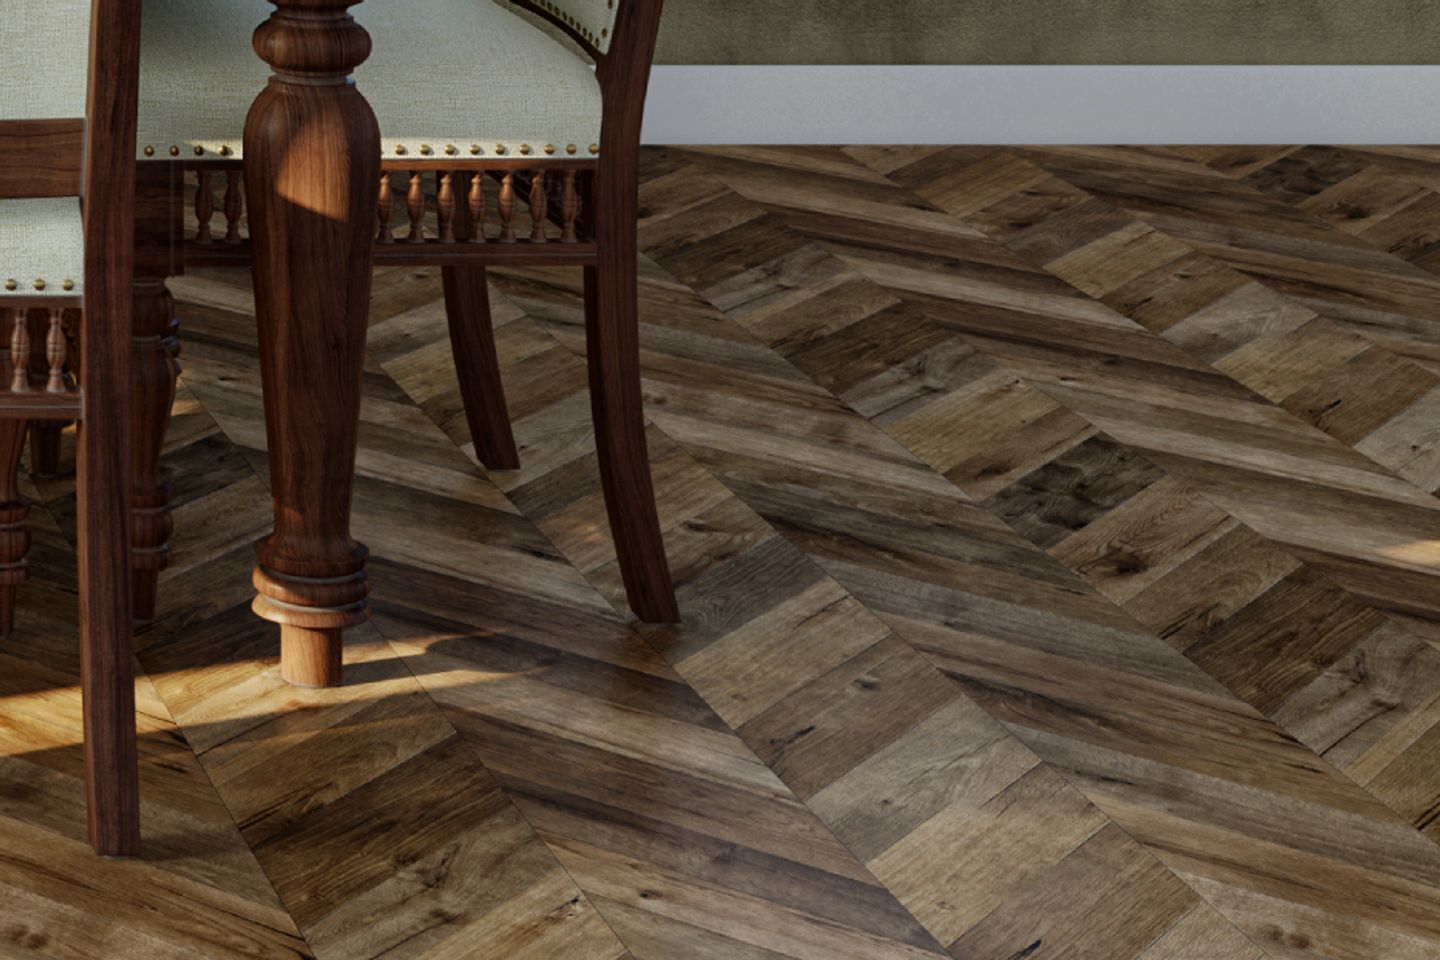 Dark Brown Flooring Design With Herringbone Patterned Tiles - Livspace